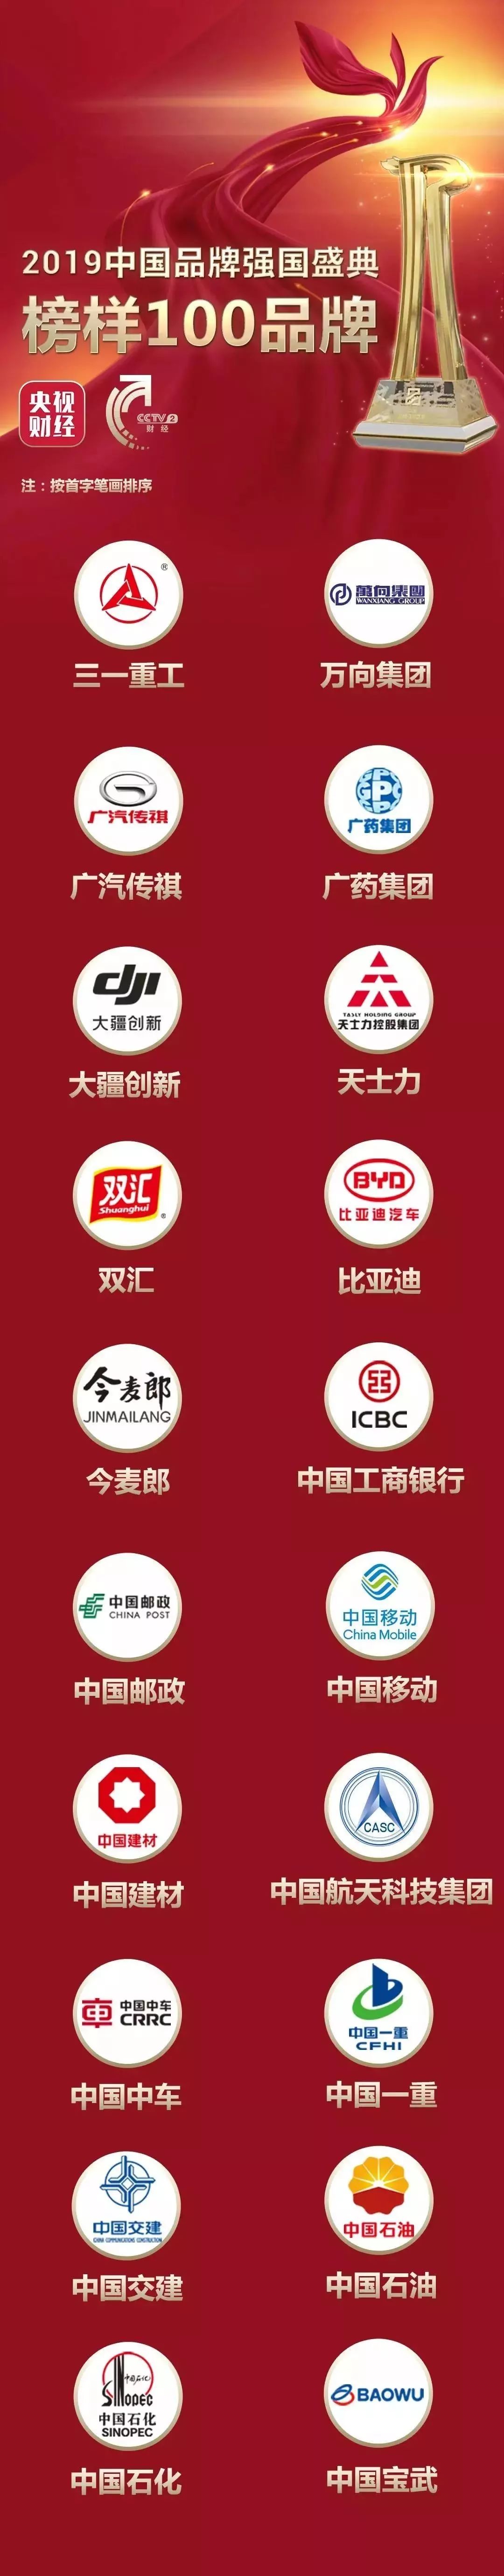 新中国成立70周年70品牌 2019年中国企业海外形象20强 2019中国品牌